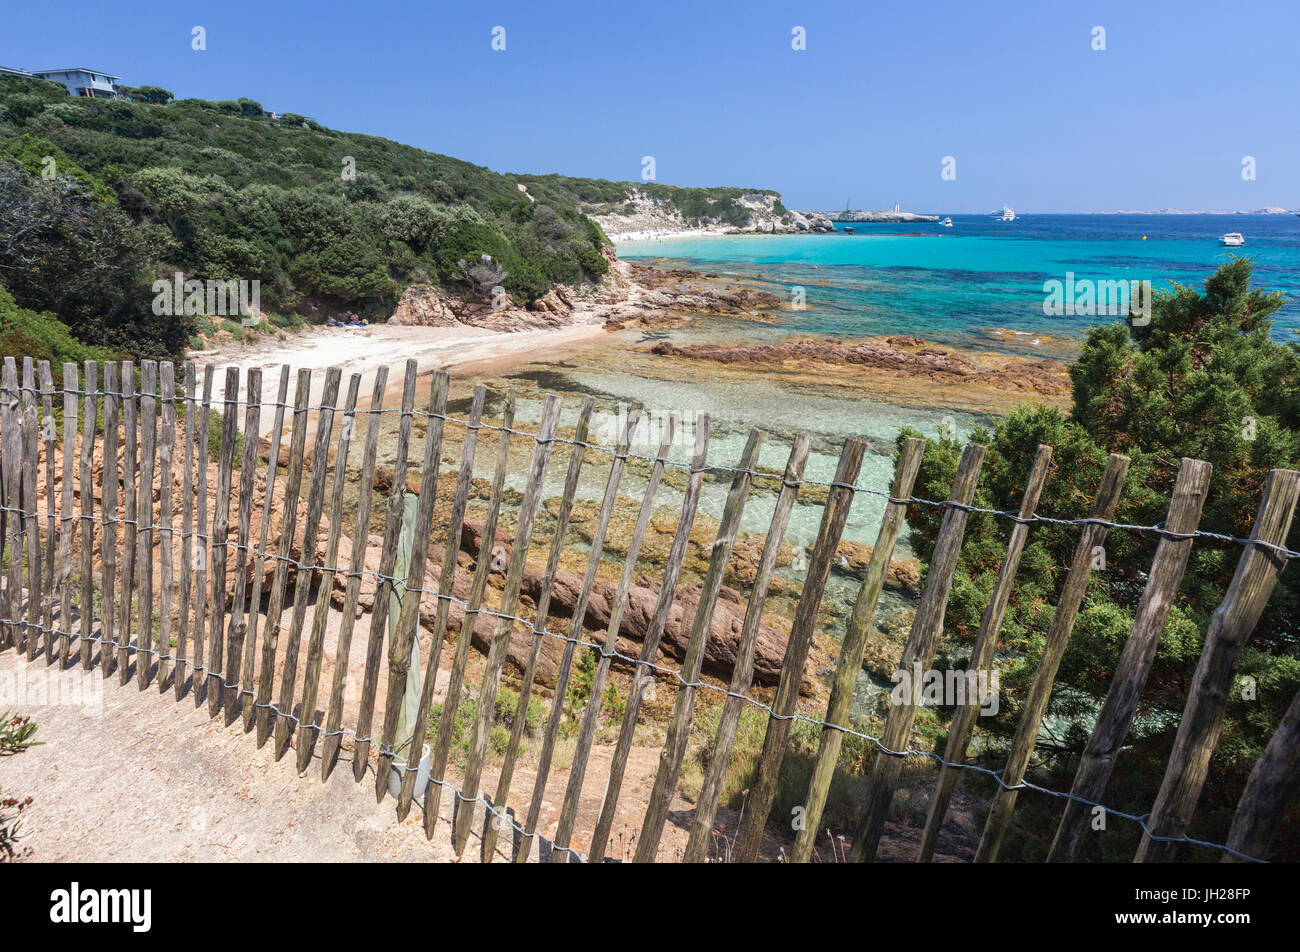 Der Holzzaun rahmt die Kalkfelsen und das türkisblaue Meer, Sperone, Bonifacio, Süd-Korsika, Frankreich, Mittelmeer, Europa Stockfoto